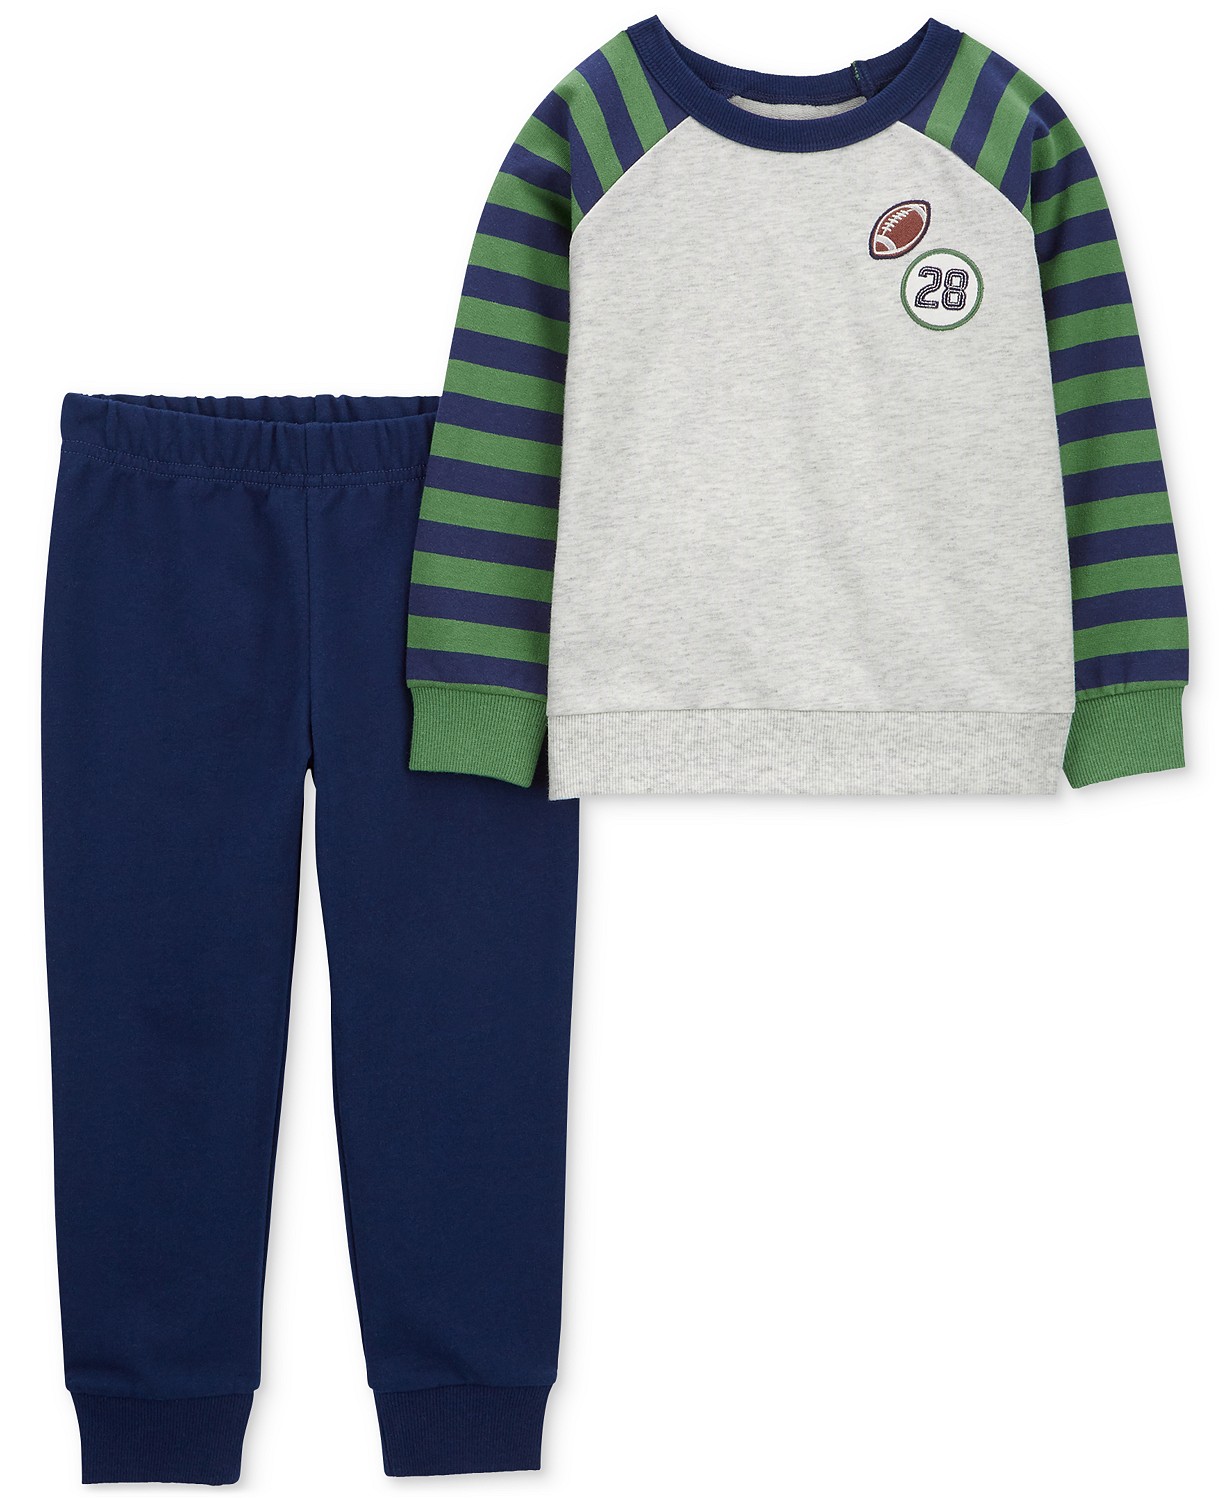 카터스 Baby Boys Football Raglan Shirt and Pants 2 Piece Set